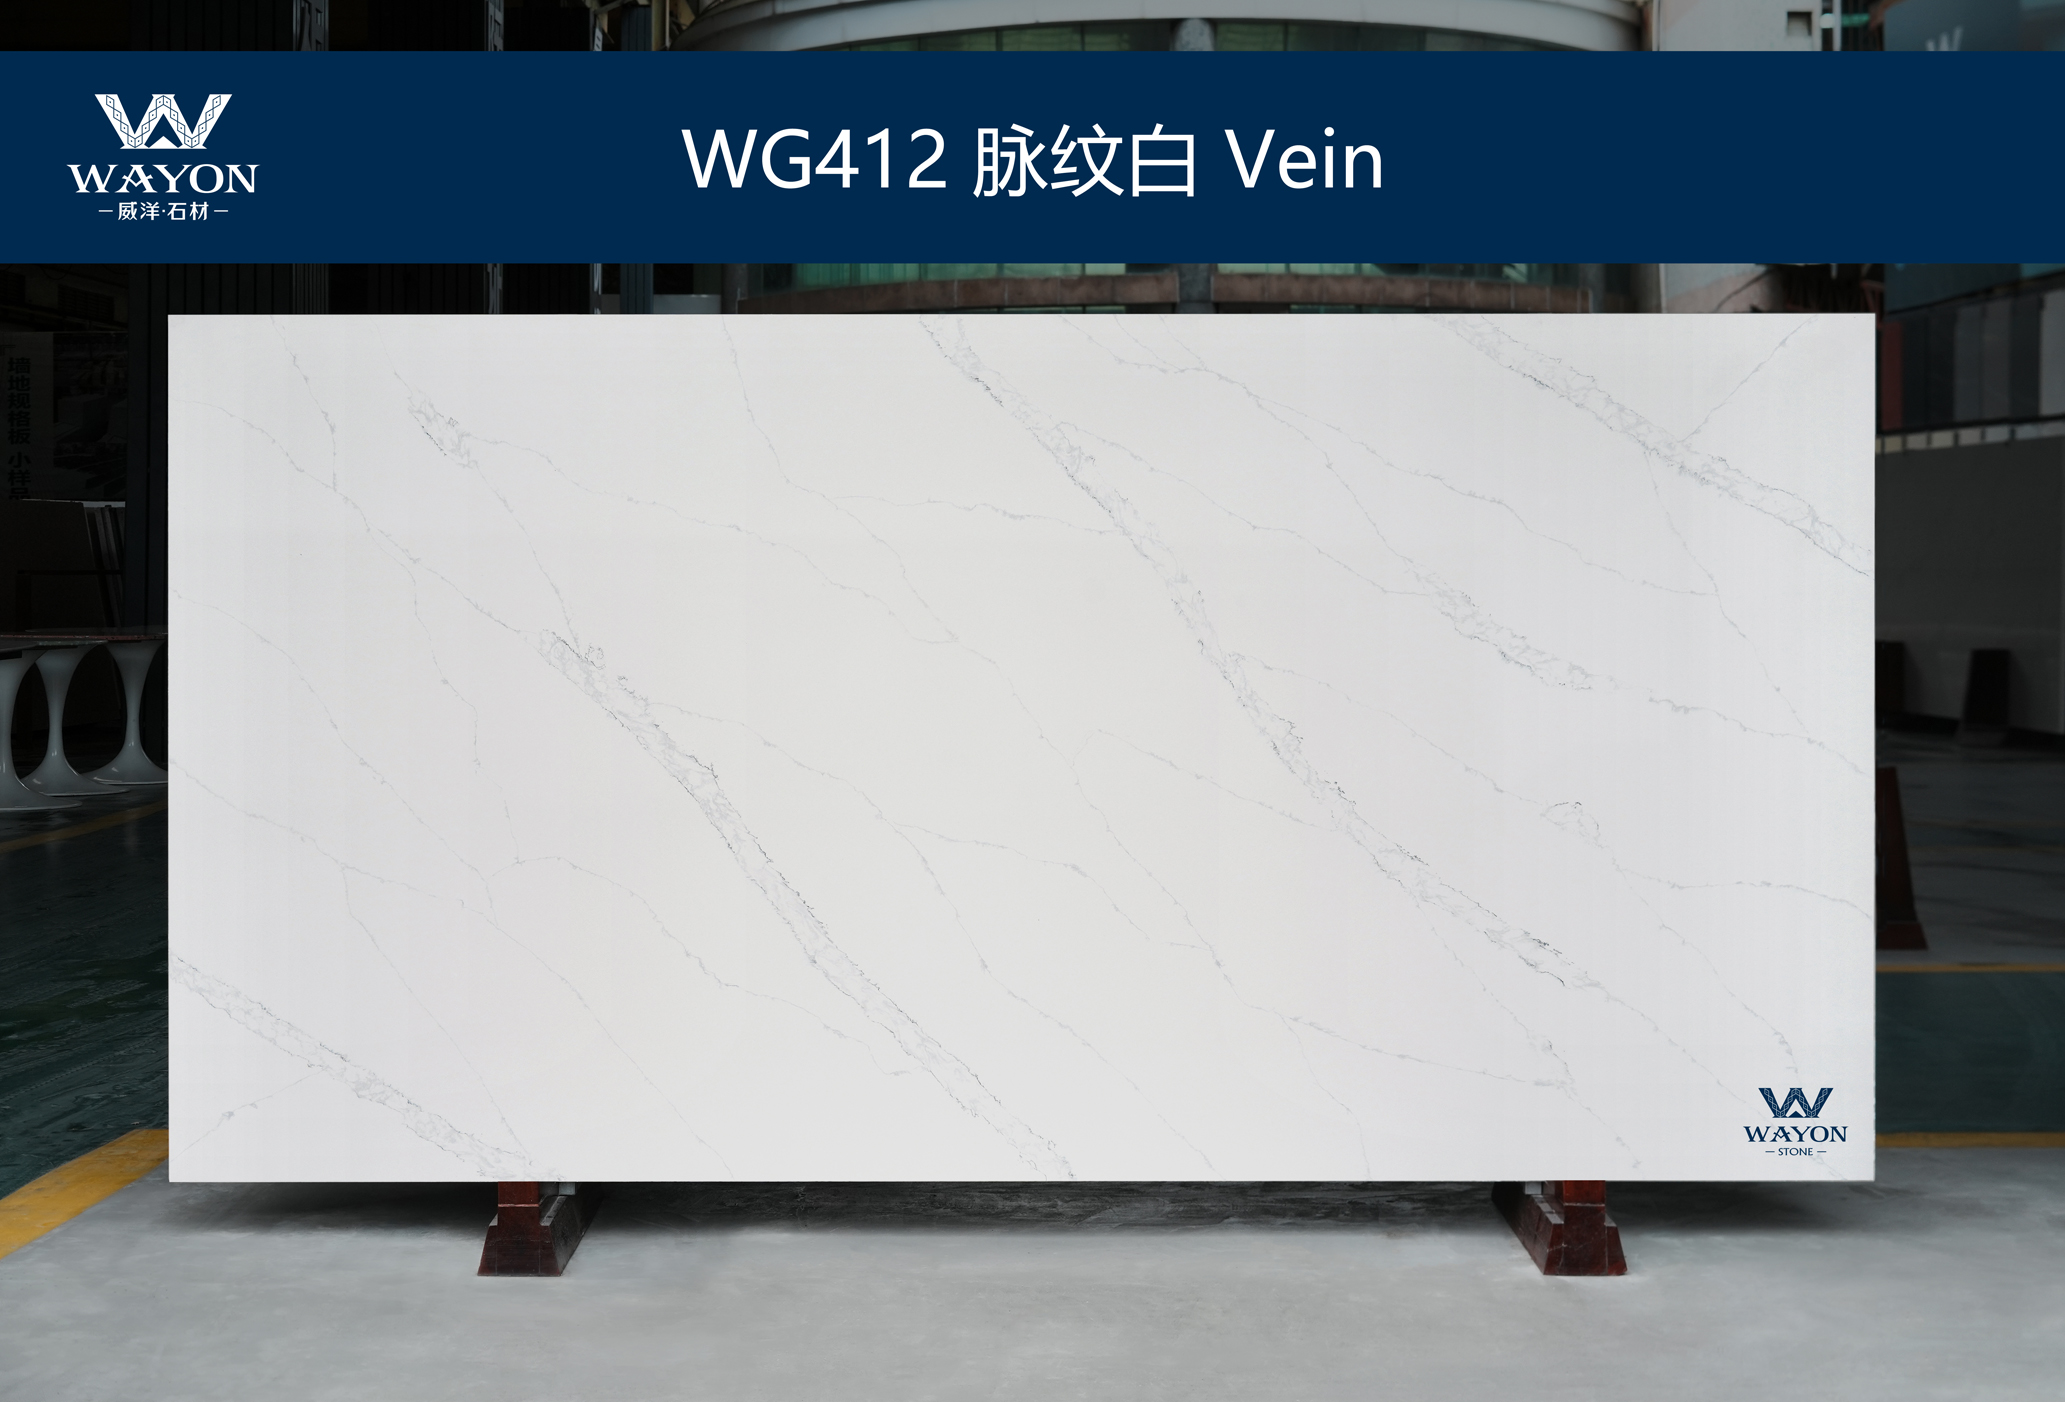 WG412 Vein